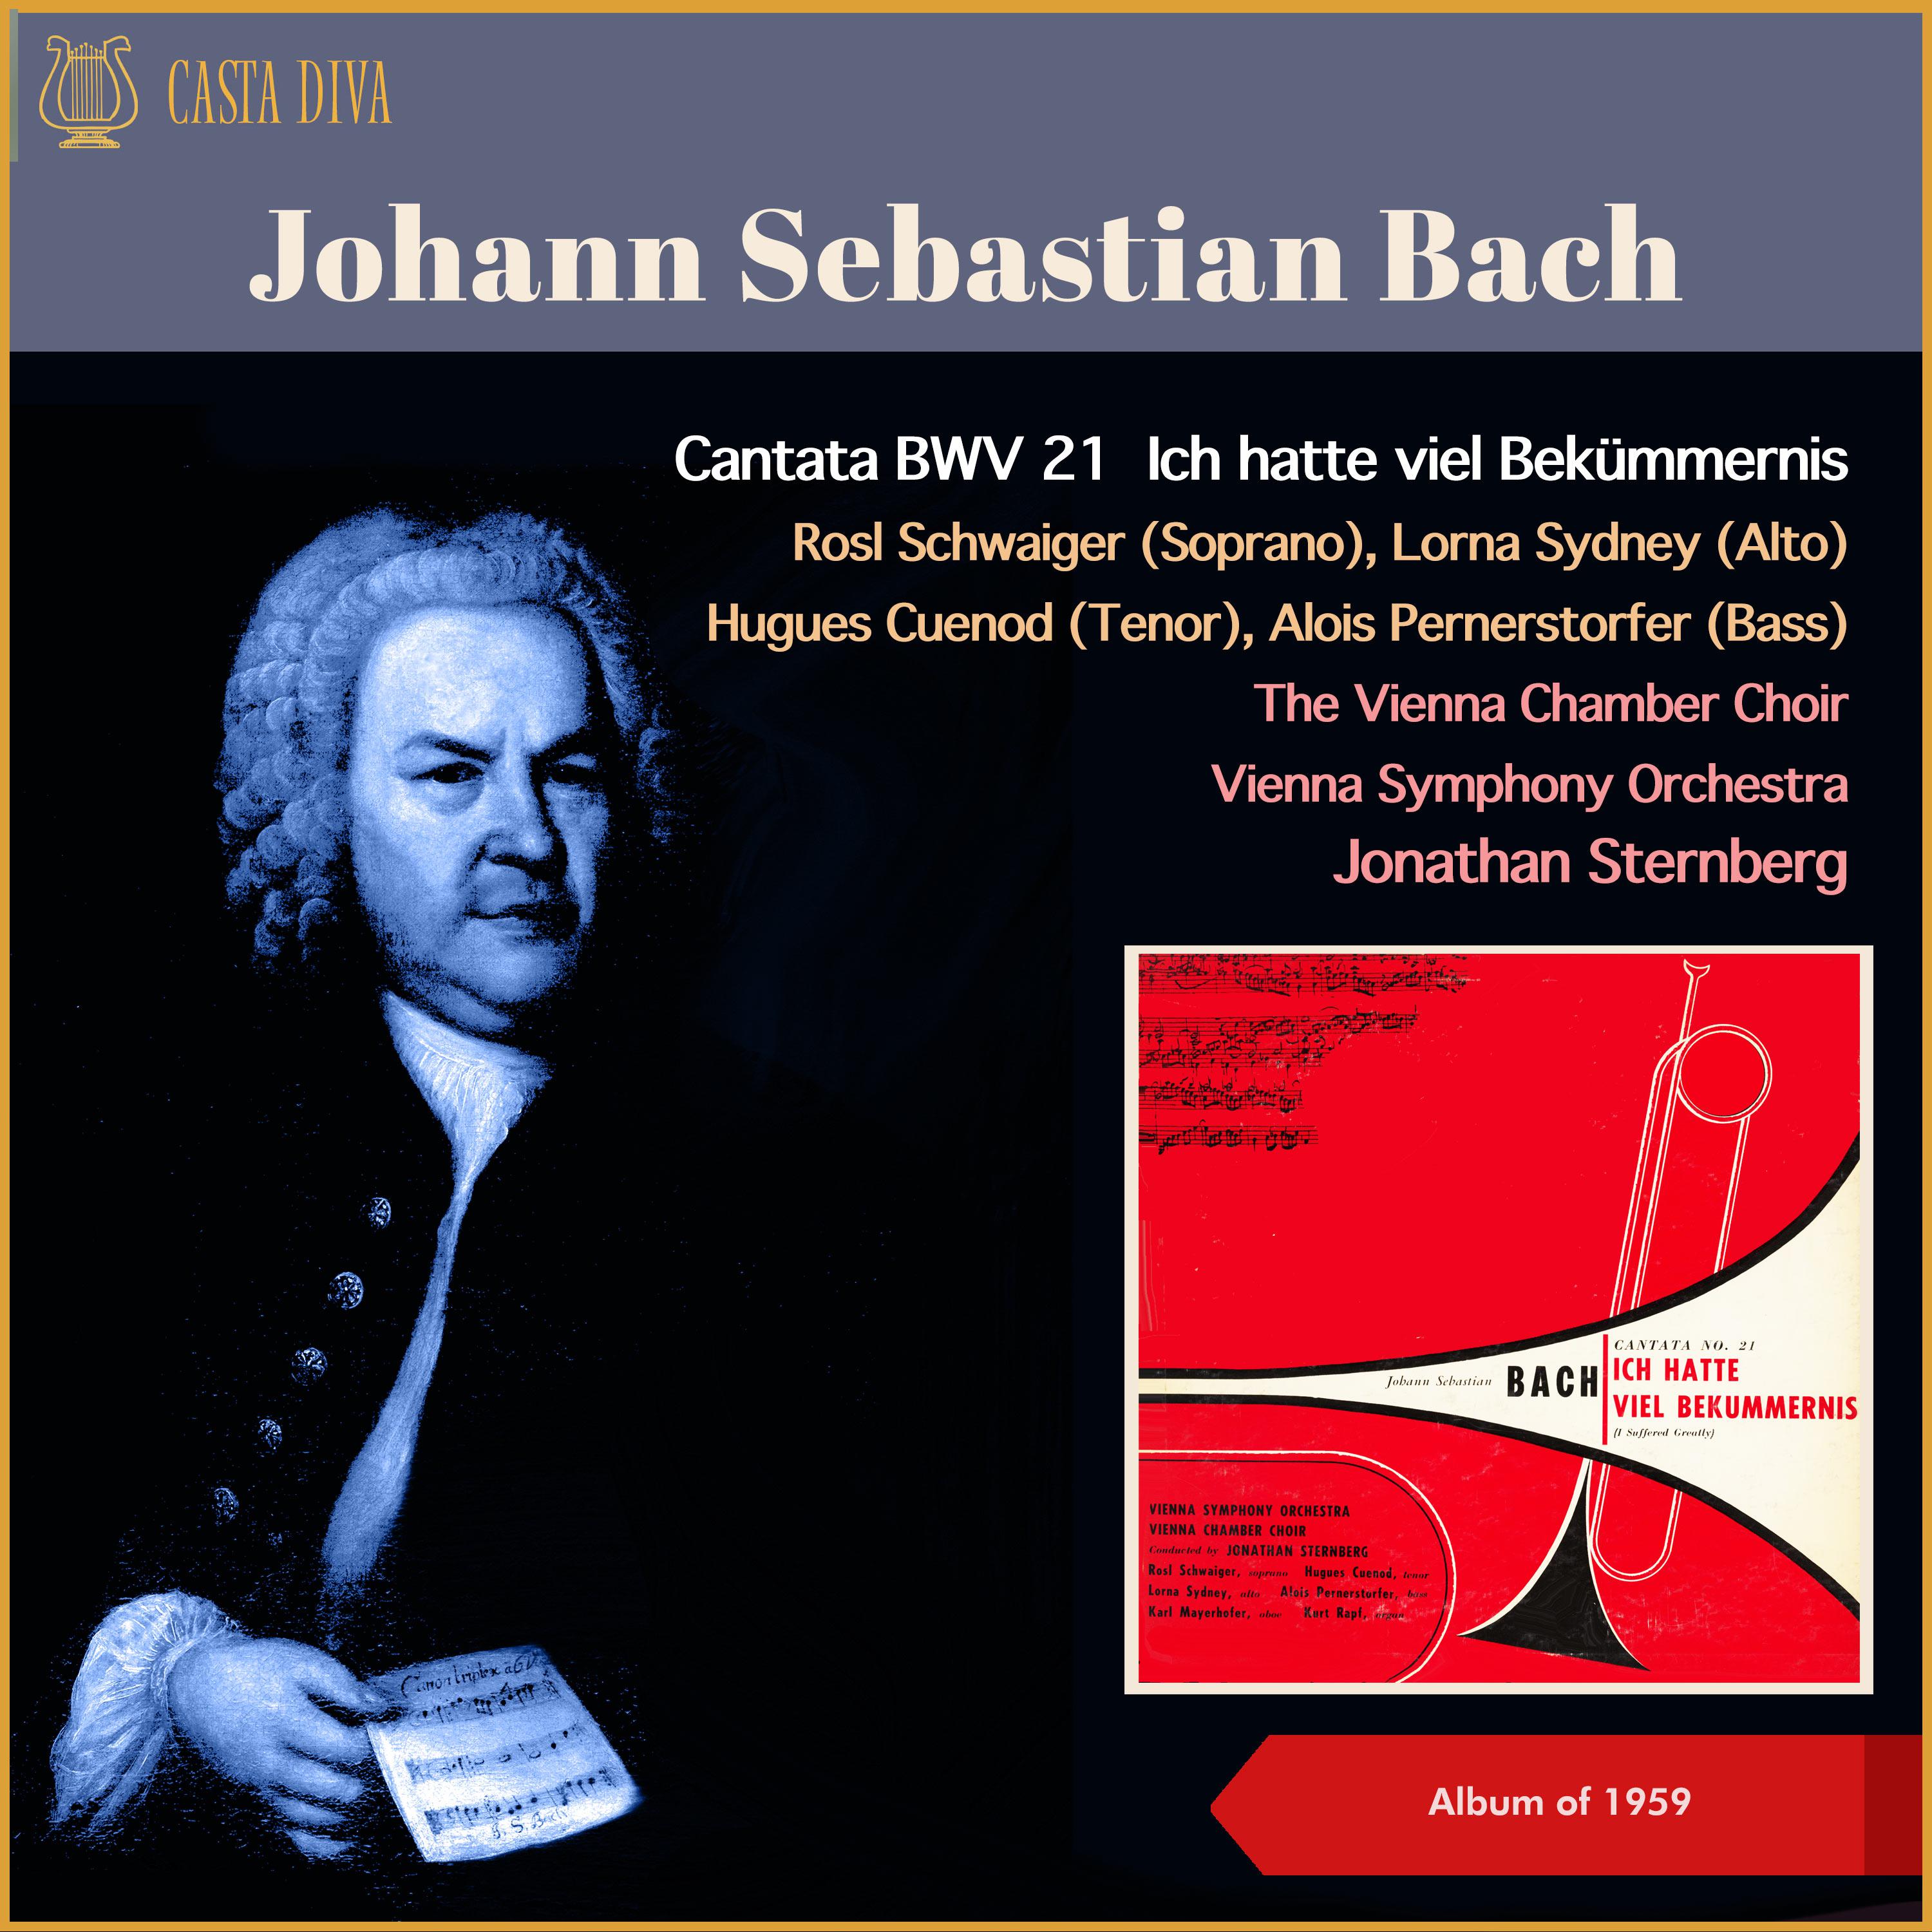 Jonathan Sternberg - Cantata BWV 21 ‚Ich hatte viel Bekümmernis' - I. Sinfonia